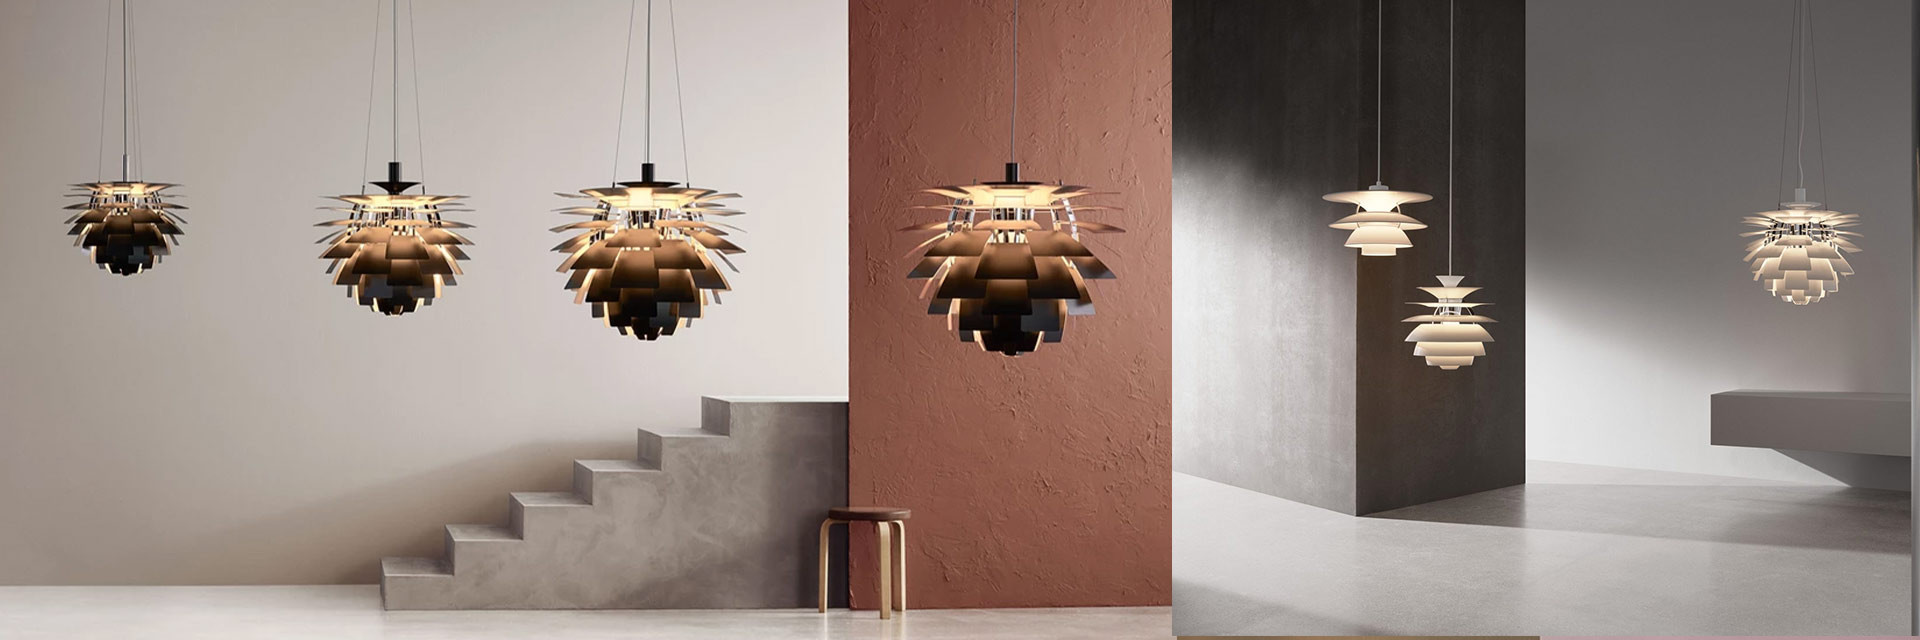 Suspensions lampes design scandinave - Louis Poulsen